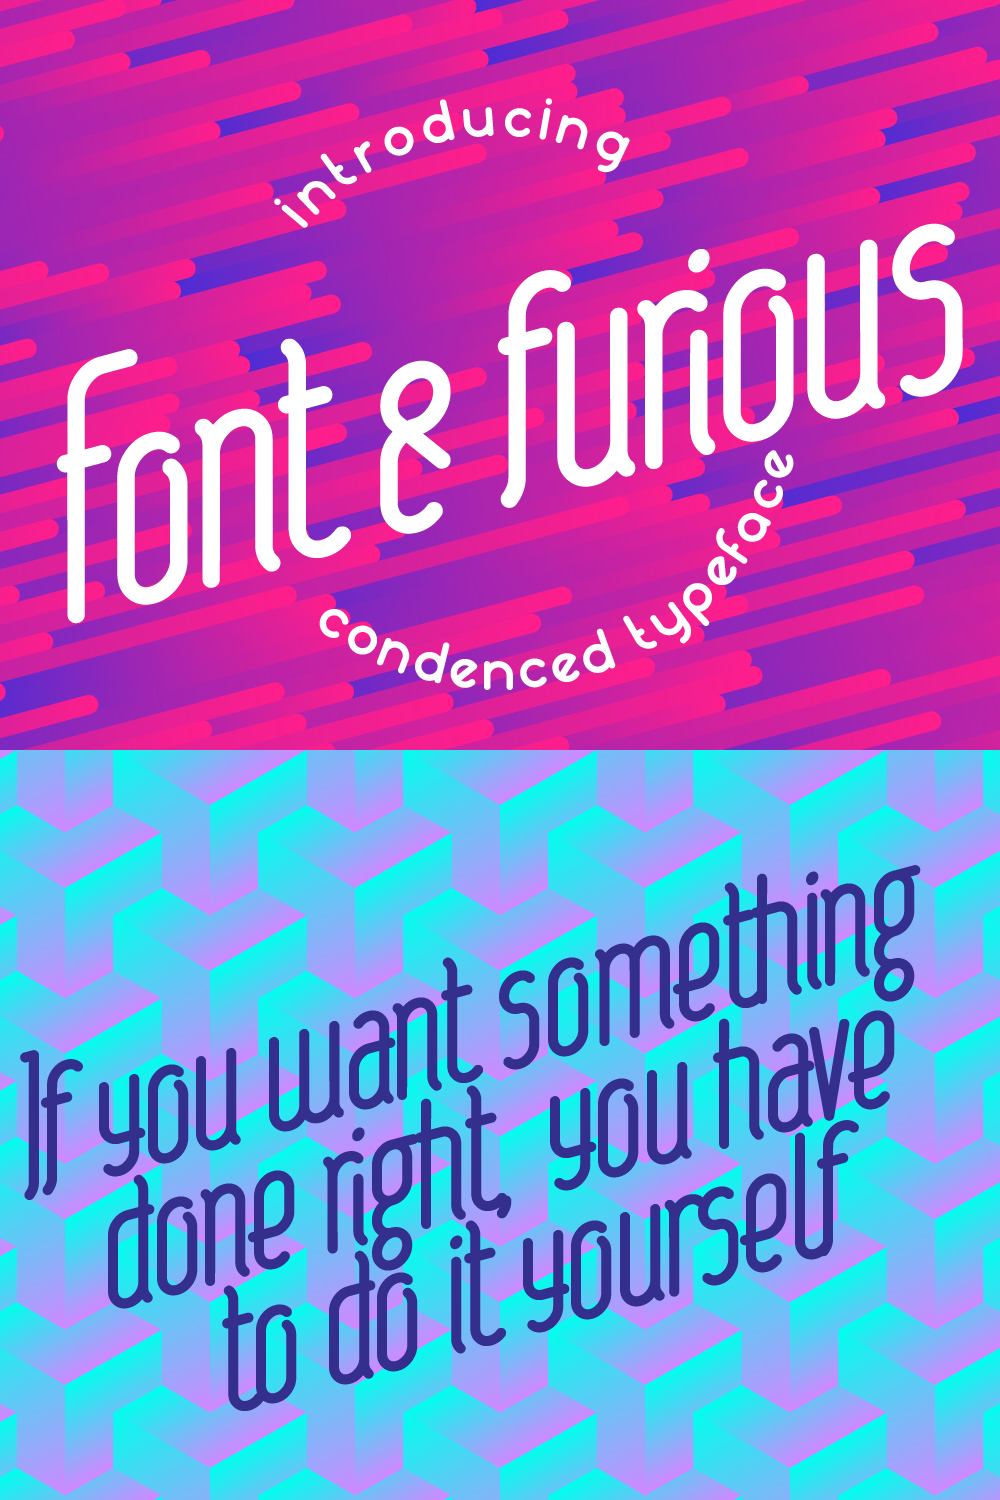 Font & Furious Font - Pinterest.